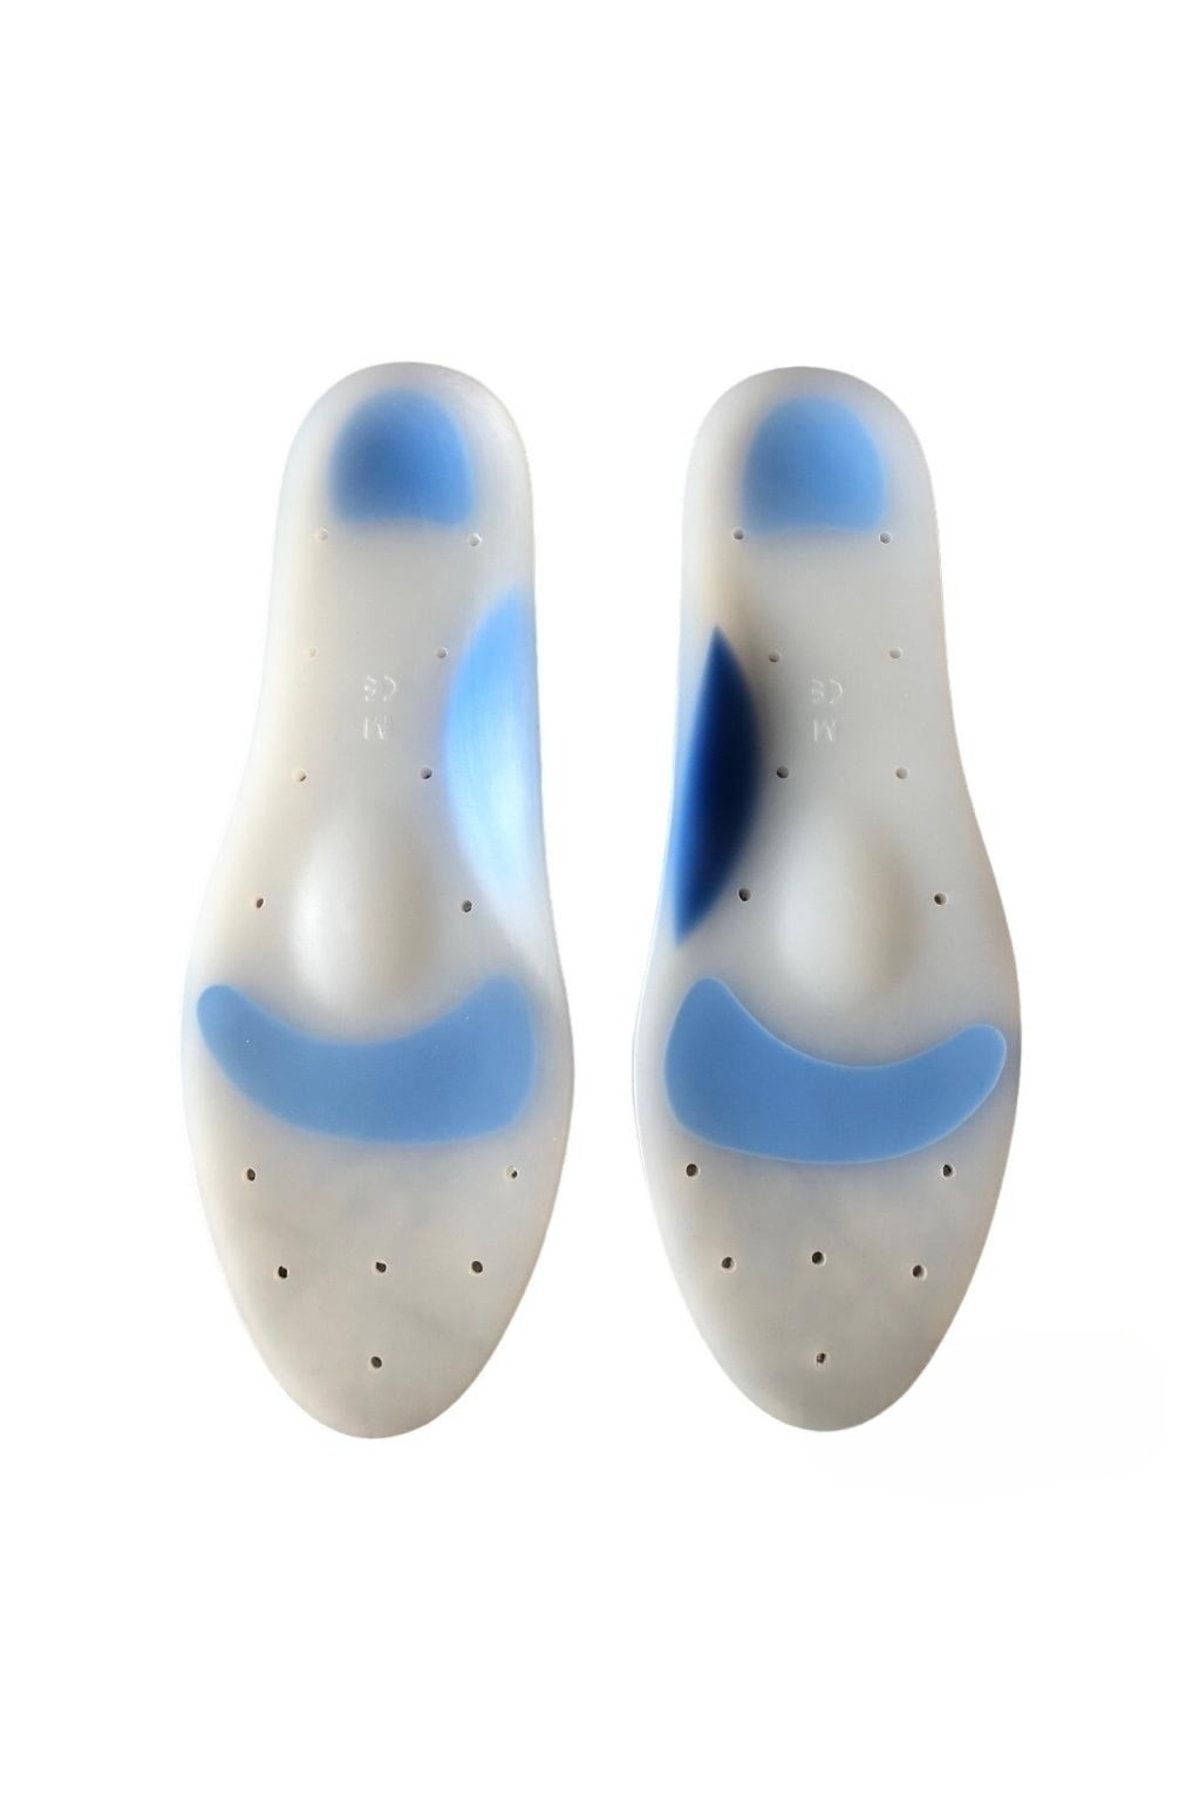 ZEYSAN Ark Takviyeli Taban Düşüklüğü Düz Taban Içe Basma Destekli Anatomik Silikon Ayakkabı Tabanlığı